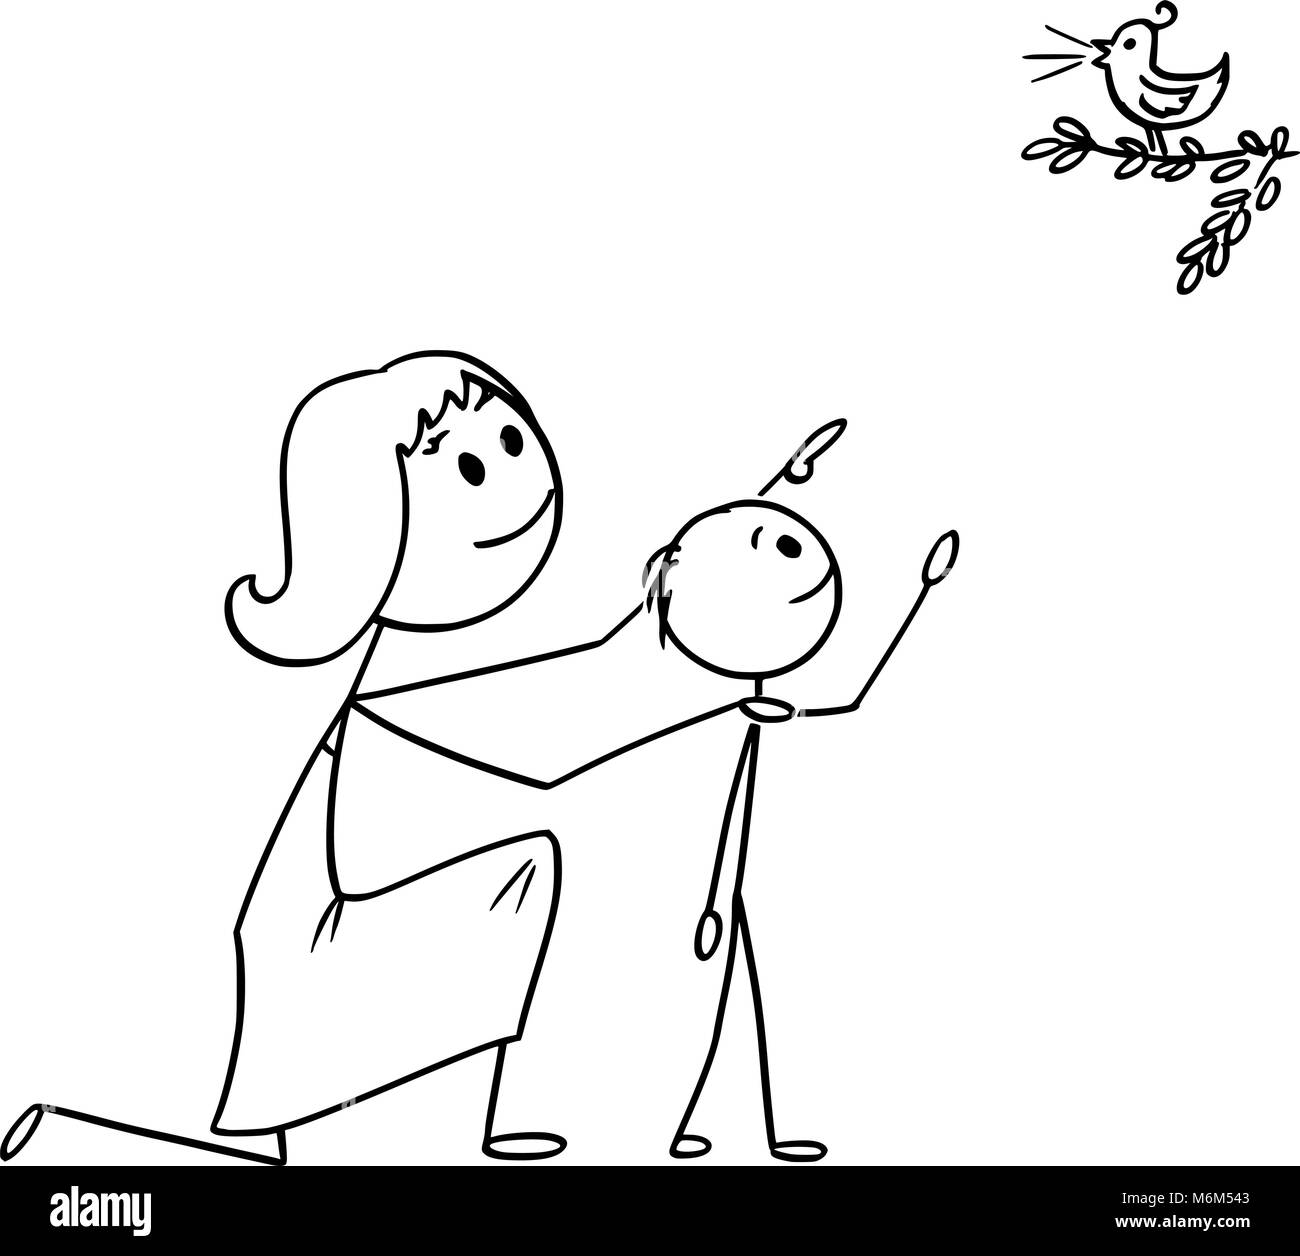 Caricatura de madre e hijo viendo un ave silvestre en la naturaleza Ilustración del Vector